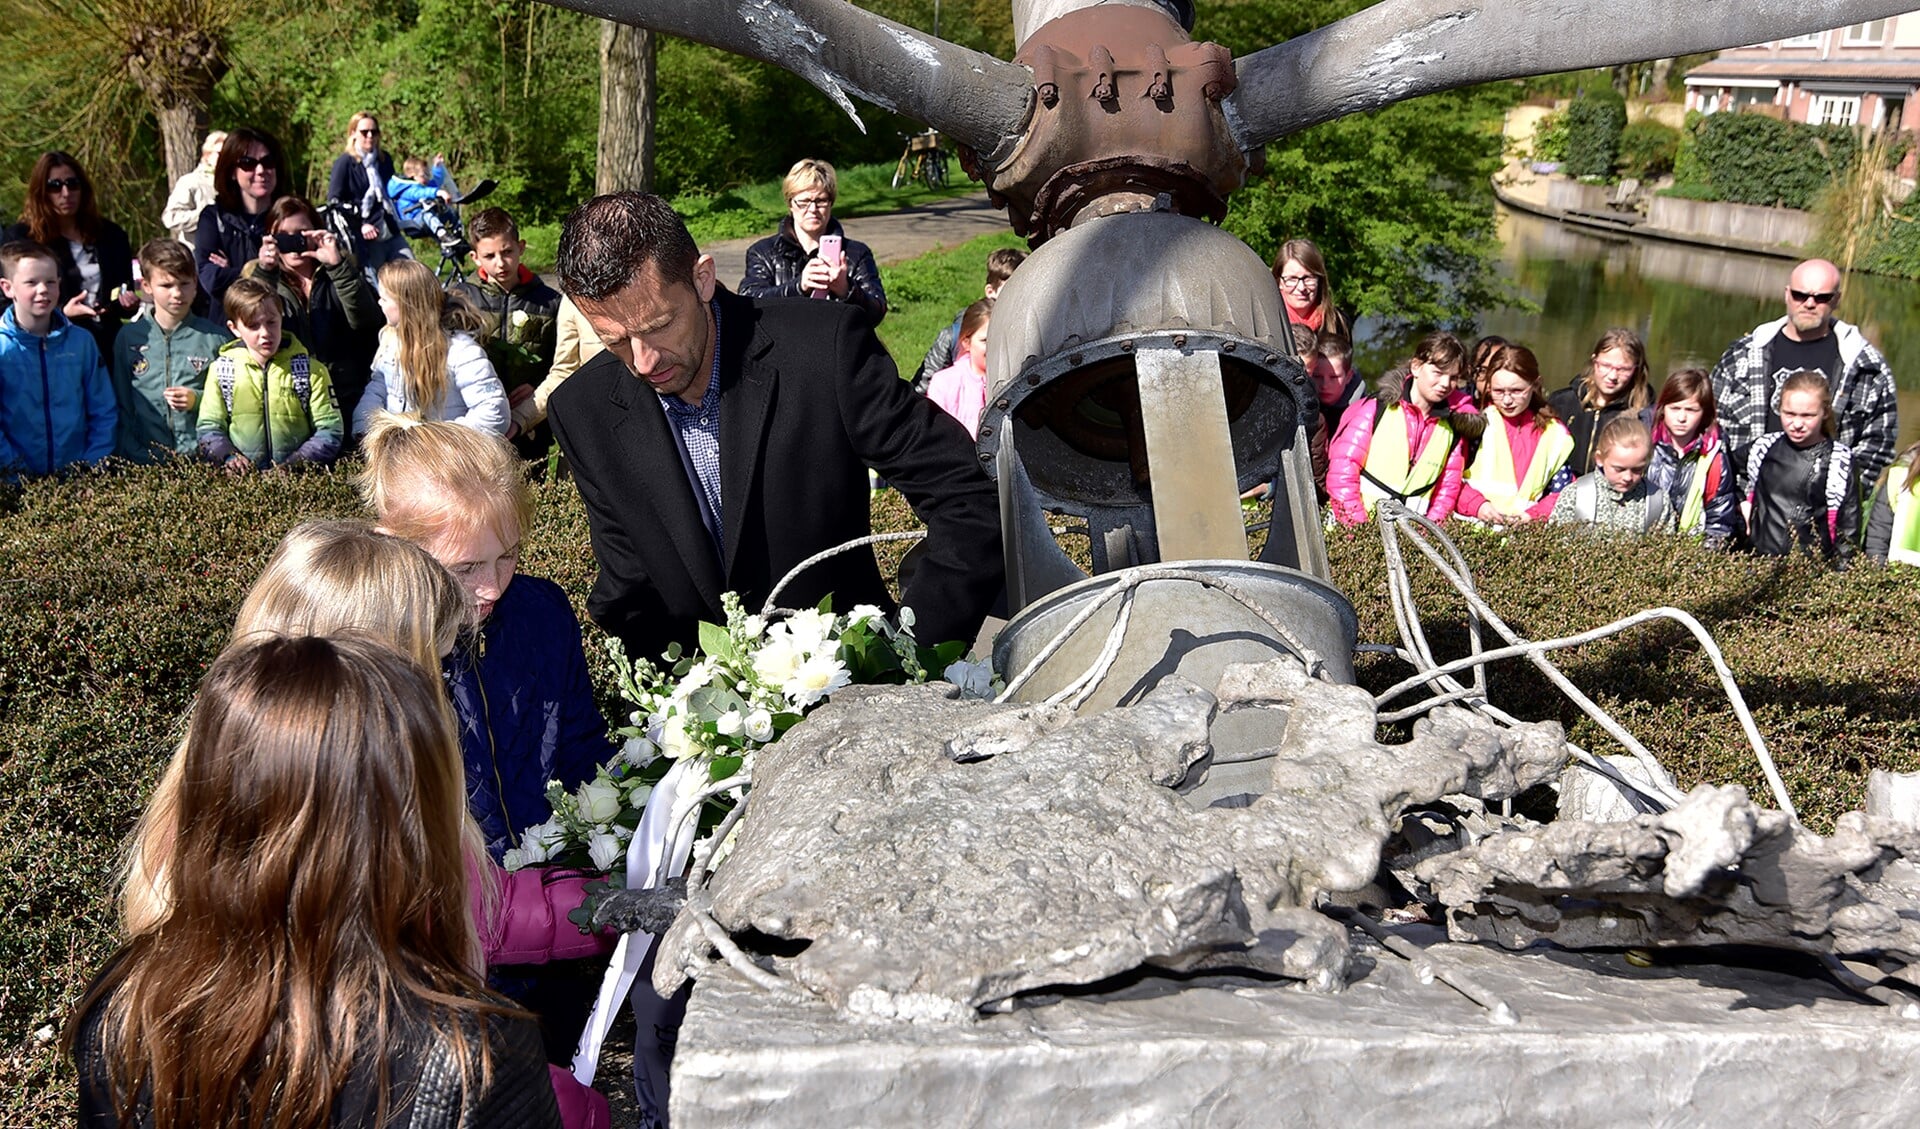 De wethouder legde samen met de leerlingen bloemen bij het monument. Foto's: René Bakker.